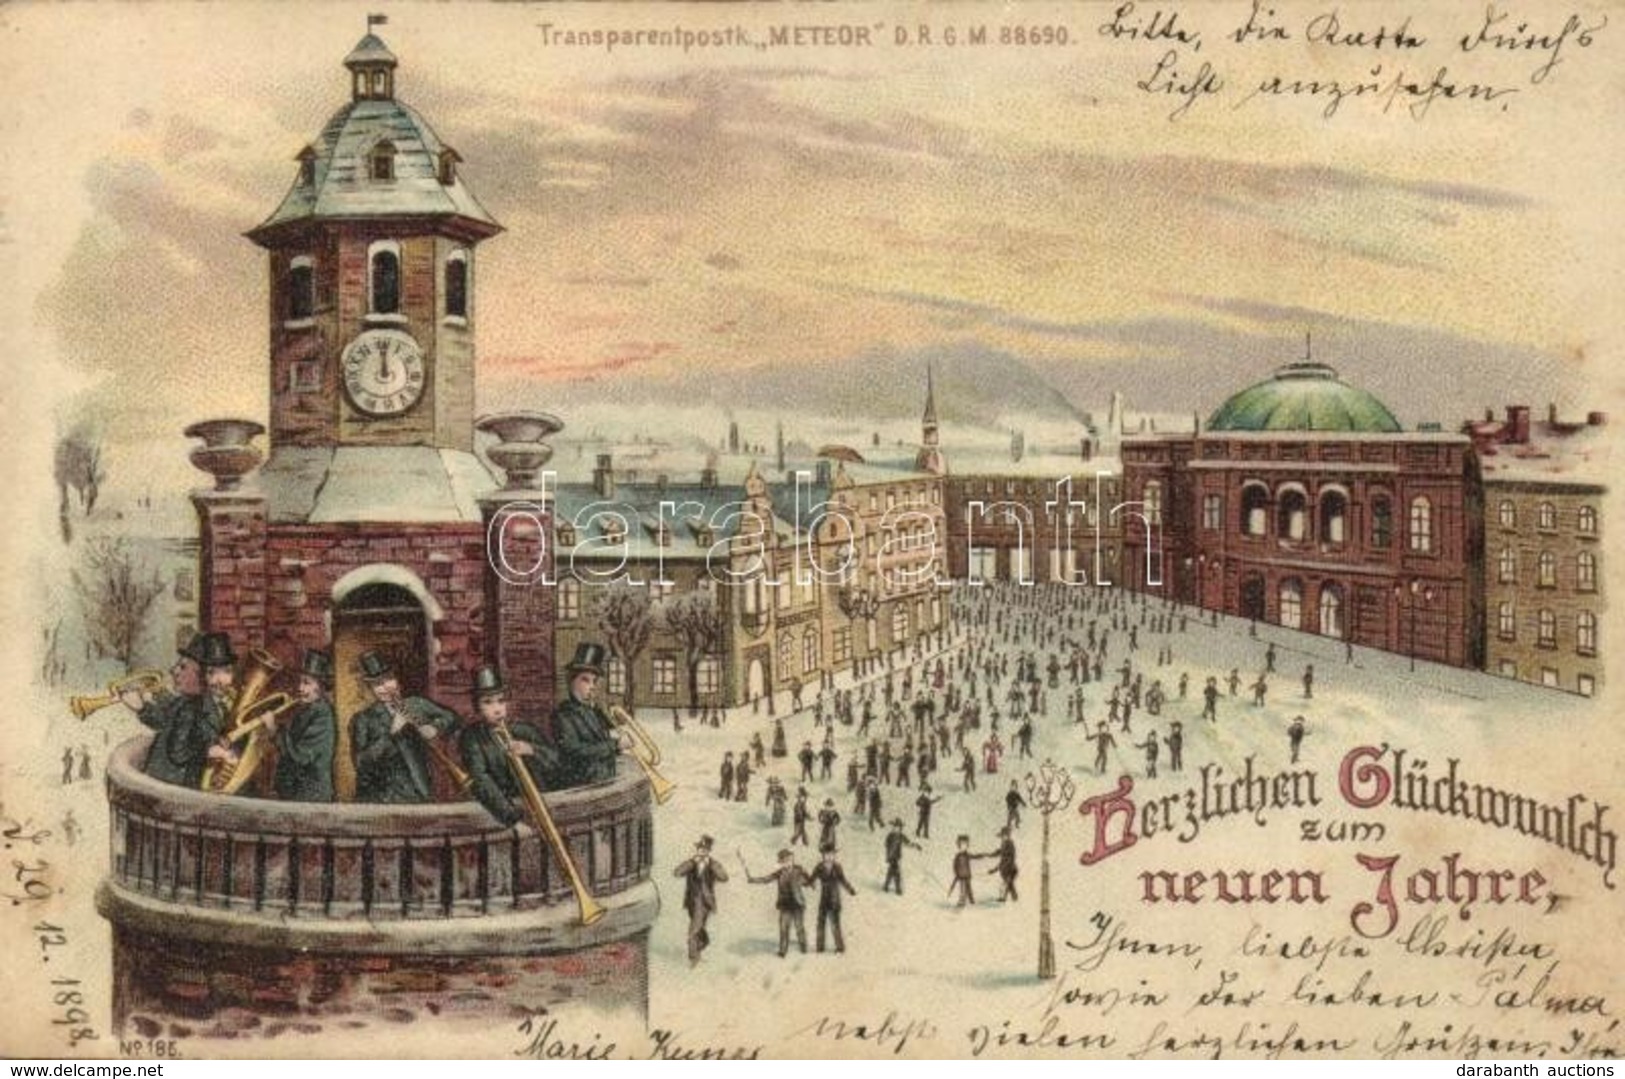 T2 1898 Herzlichen Glückwunsh Zum Neuen Jahre. / New Year Greeting Art Postcard, Music Band. Meteor Transparentpostk. DR - Non Classificati